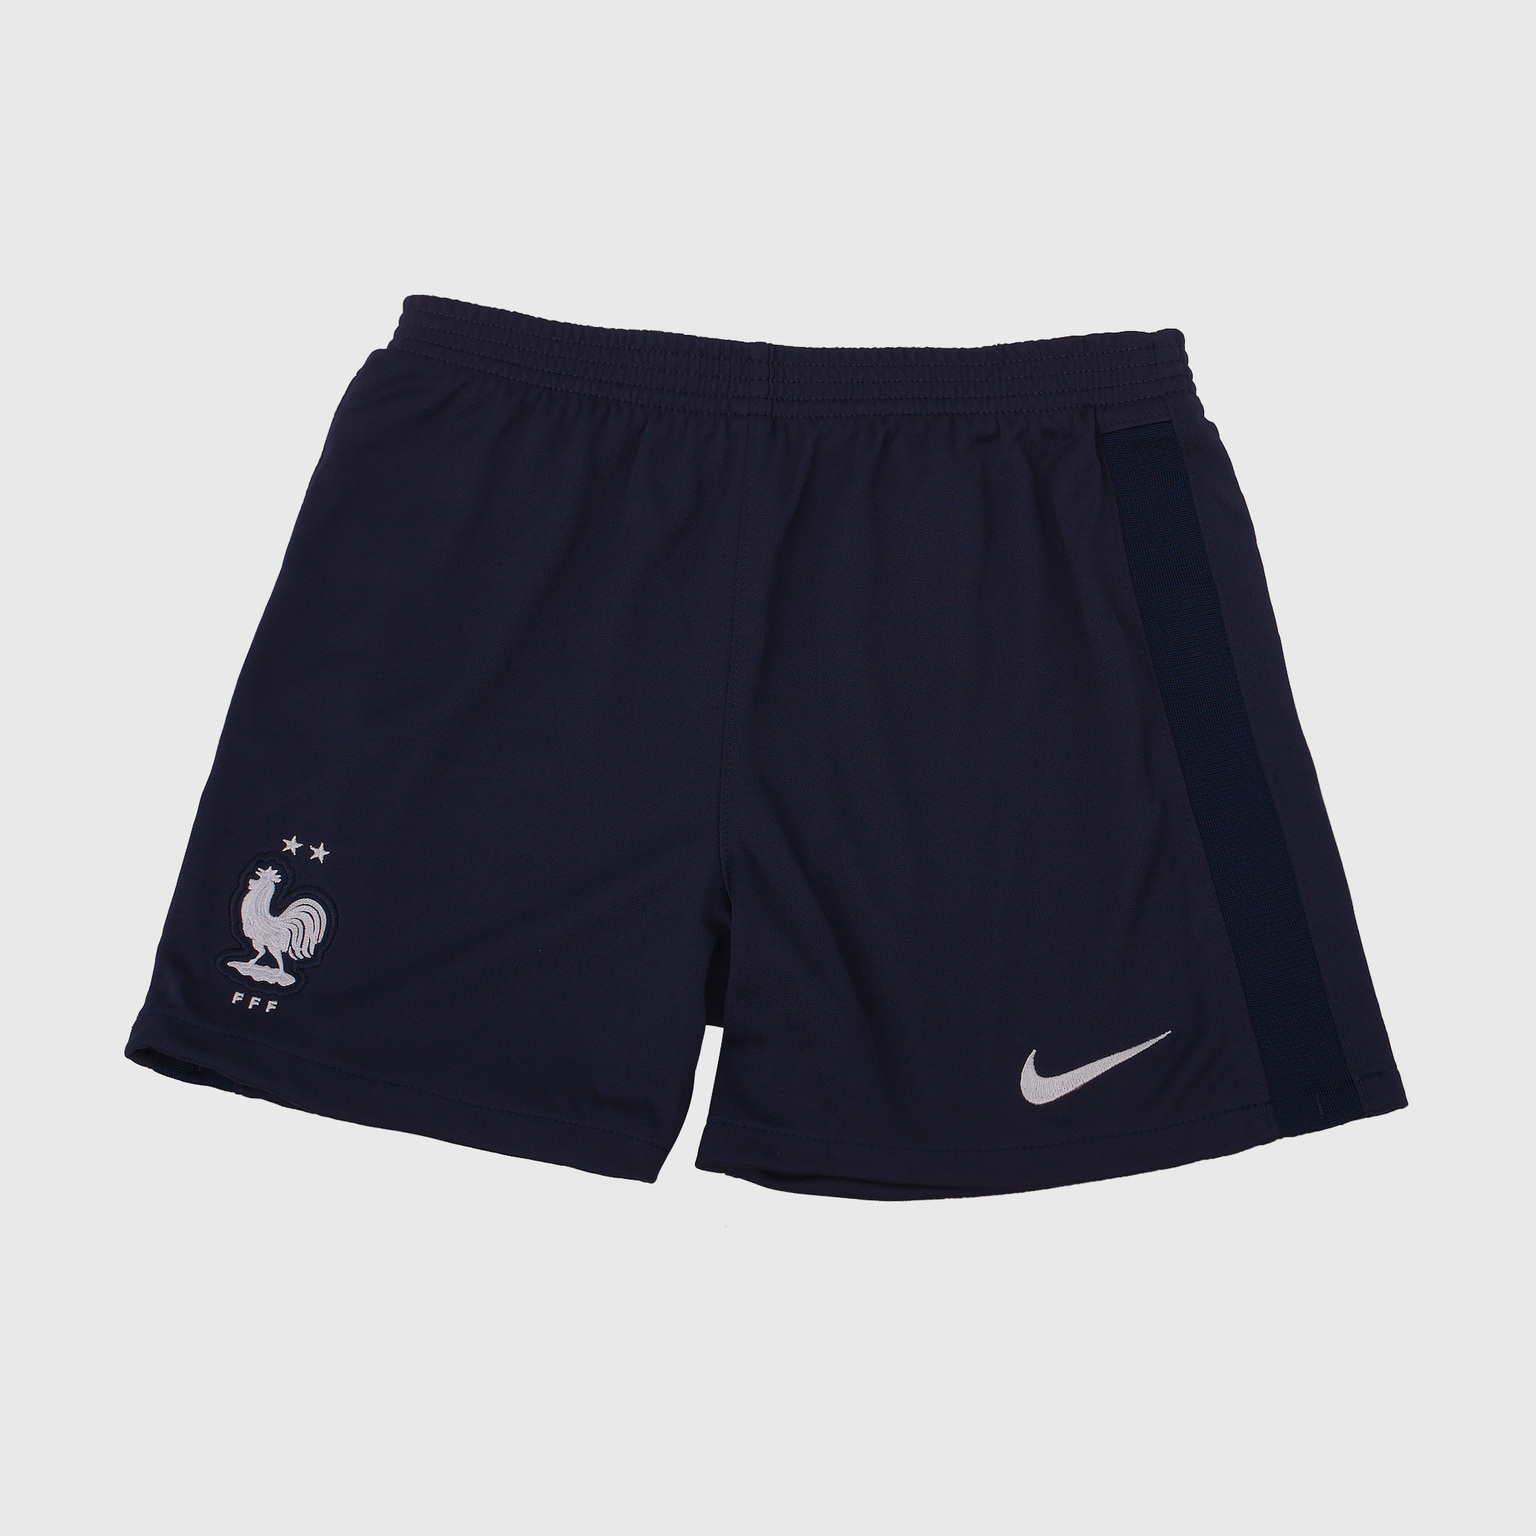 Комплект детской формы Nike сборной Франции сезон 2020/21